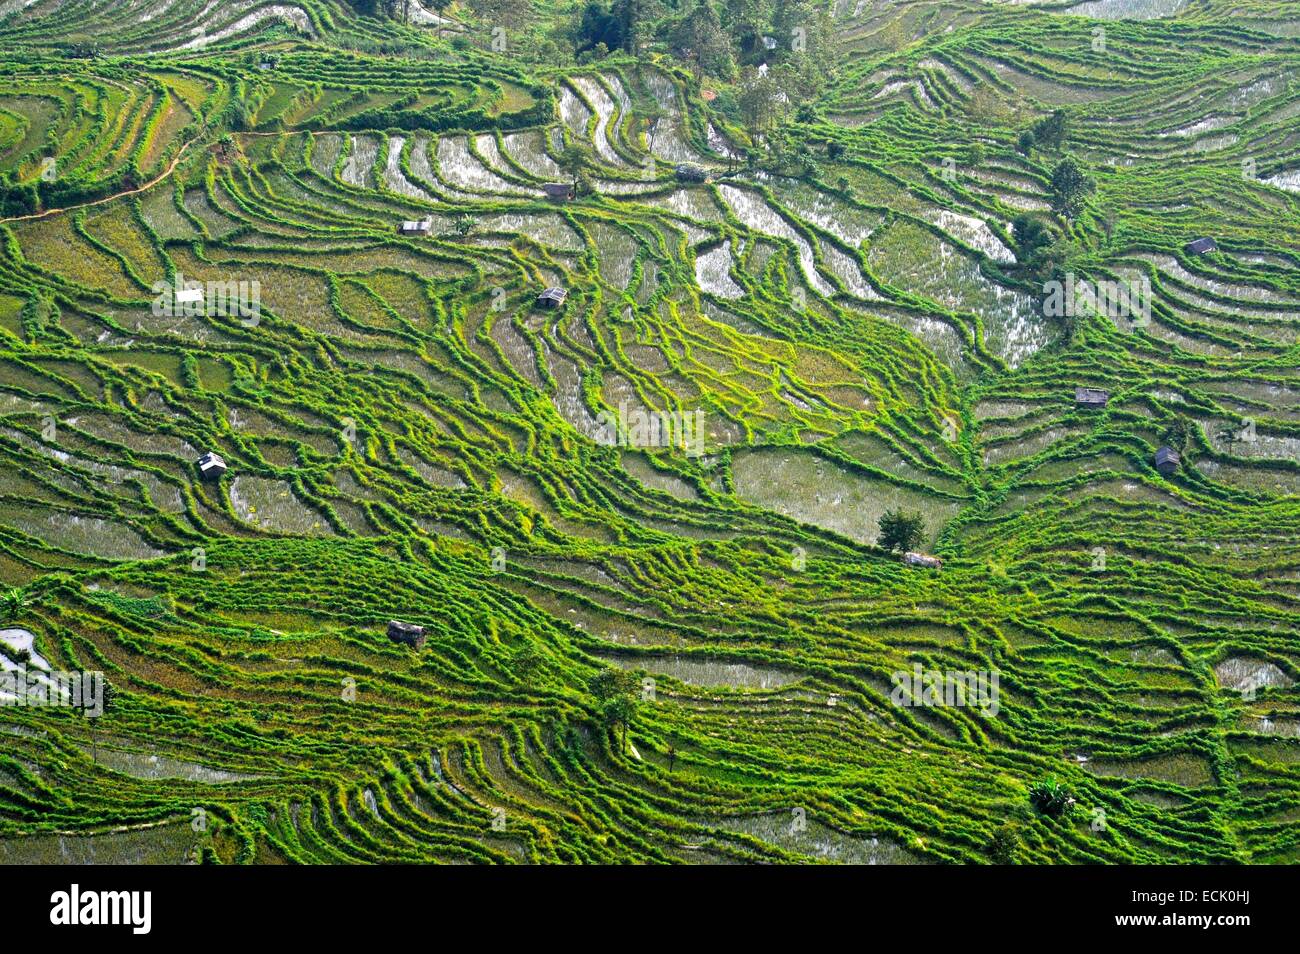 China, Yunnan Province, Yuanyang rice terraces Stock Photo